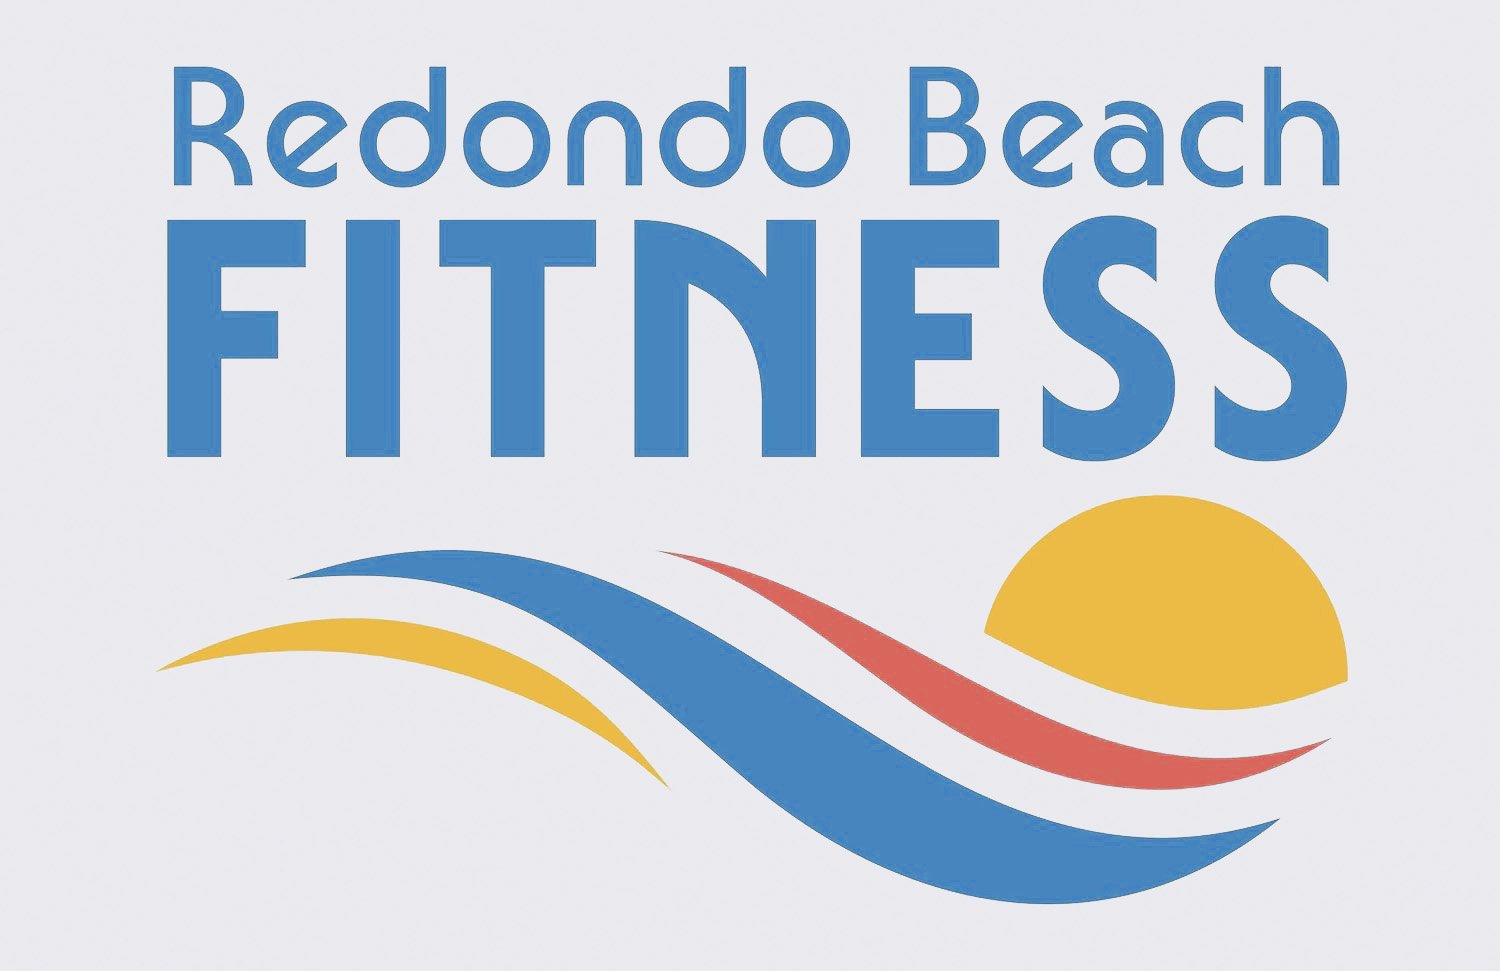 Redondo Beach Fitness